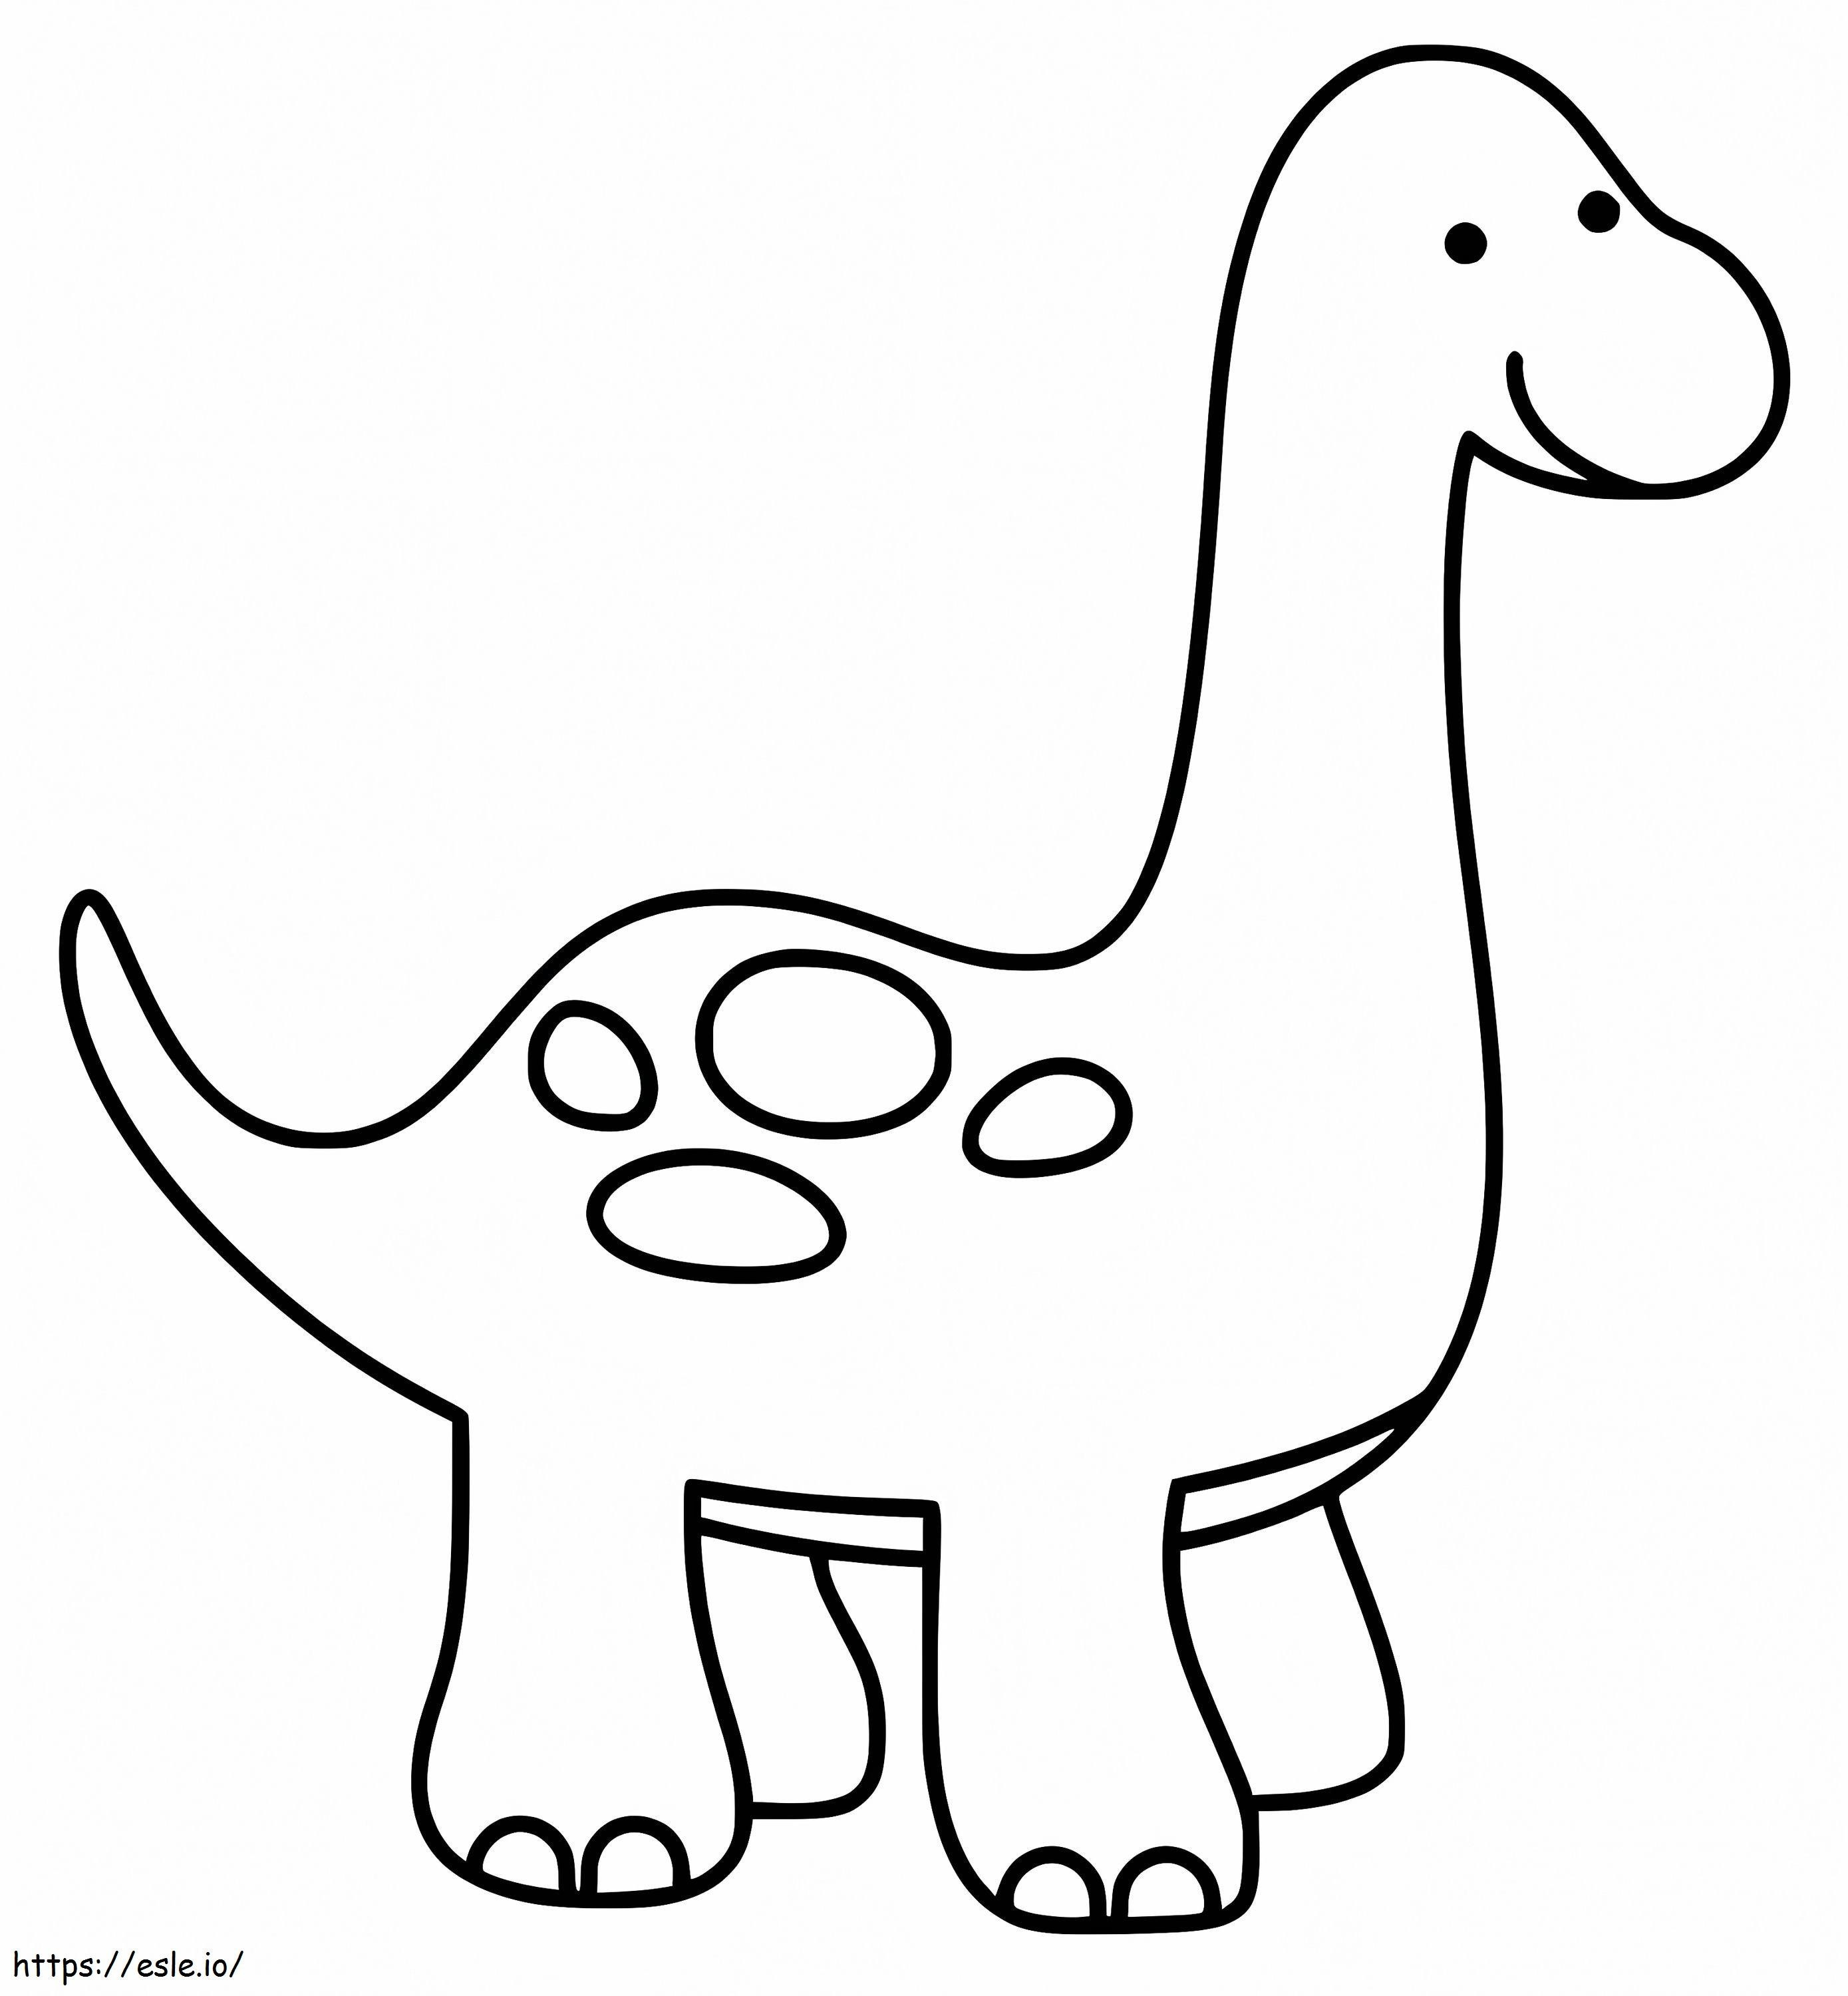 Ein süßer Dinosaurier ausmalbilder